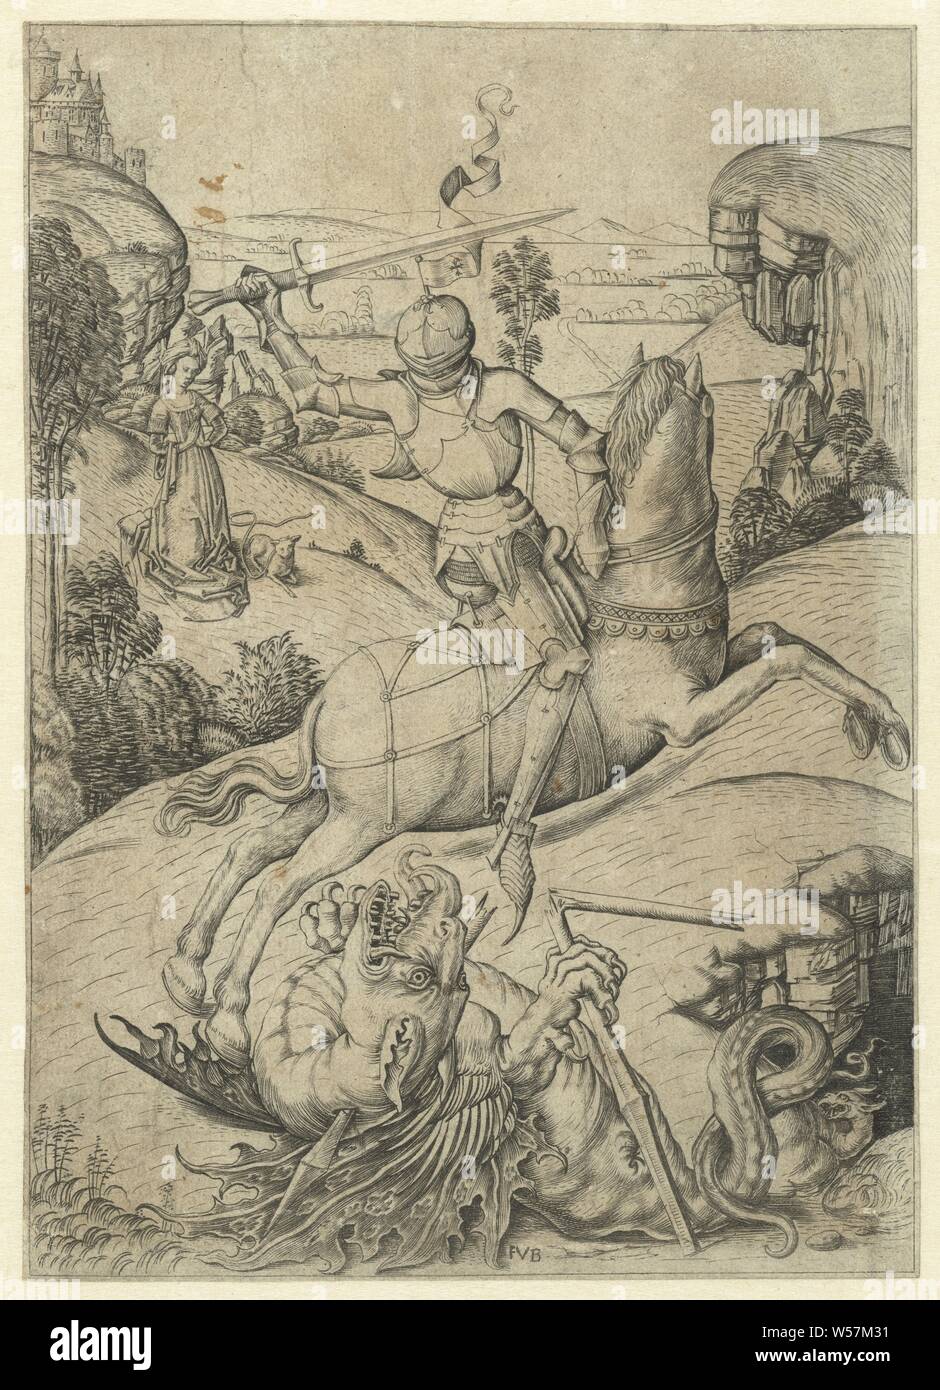 St. Georg und der Drache, George auf Pferd mit einem Schwert. Ihn unter Drachen mit einem gebrochenen Lanze. Landschaft im Hintergrund mit Frau und Lamm., St. George und der Drache: in Rüstung gekleidet und auf einem (weiß) Pferd schwingt er sein Schwert (seine Lanze liegt bereits auf dem Boden gebrochen), die Prinzessin in der Nähe angezeigt, der betet oder Flucht, Meester FVB (auf Objekt erwähnt), Nederlanden, 1475-1500, Papier, Gravur, h 177 mm × 126 mm. Stockfoto